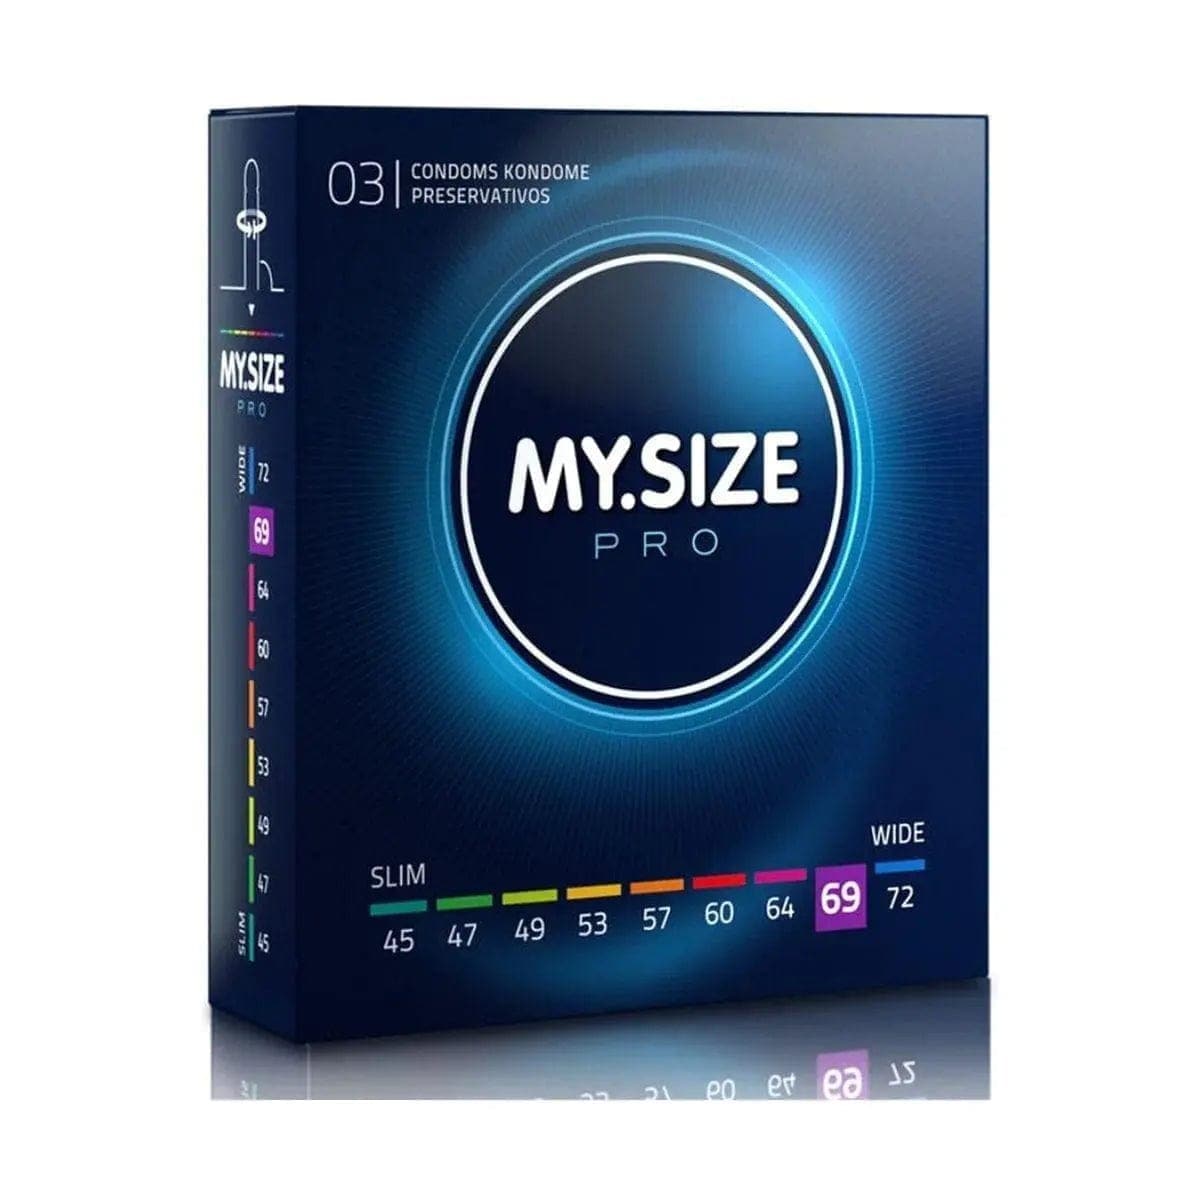 Preservativos XXL - My.Size 69mm - Melhor Ajuste e Sensibilidade  My.Size 3 preservativos  